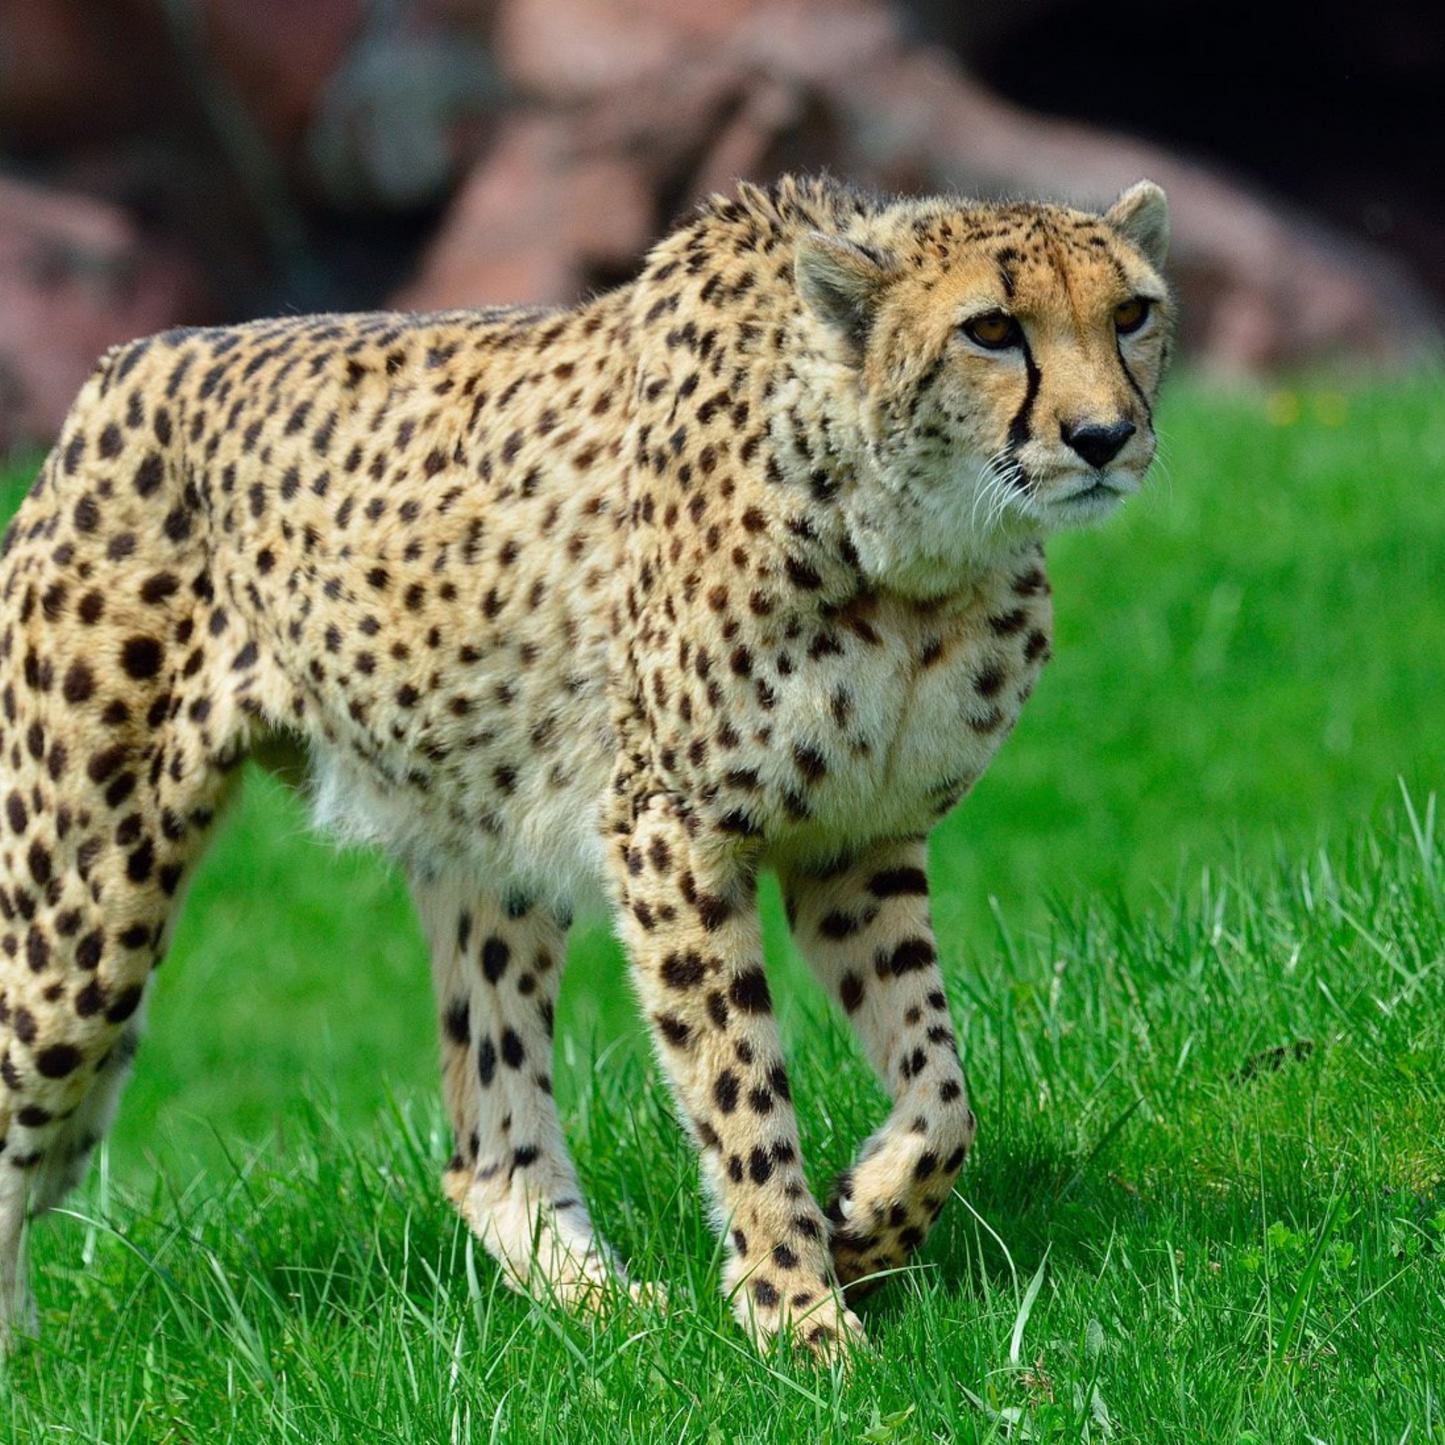 African Cheetah